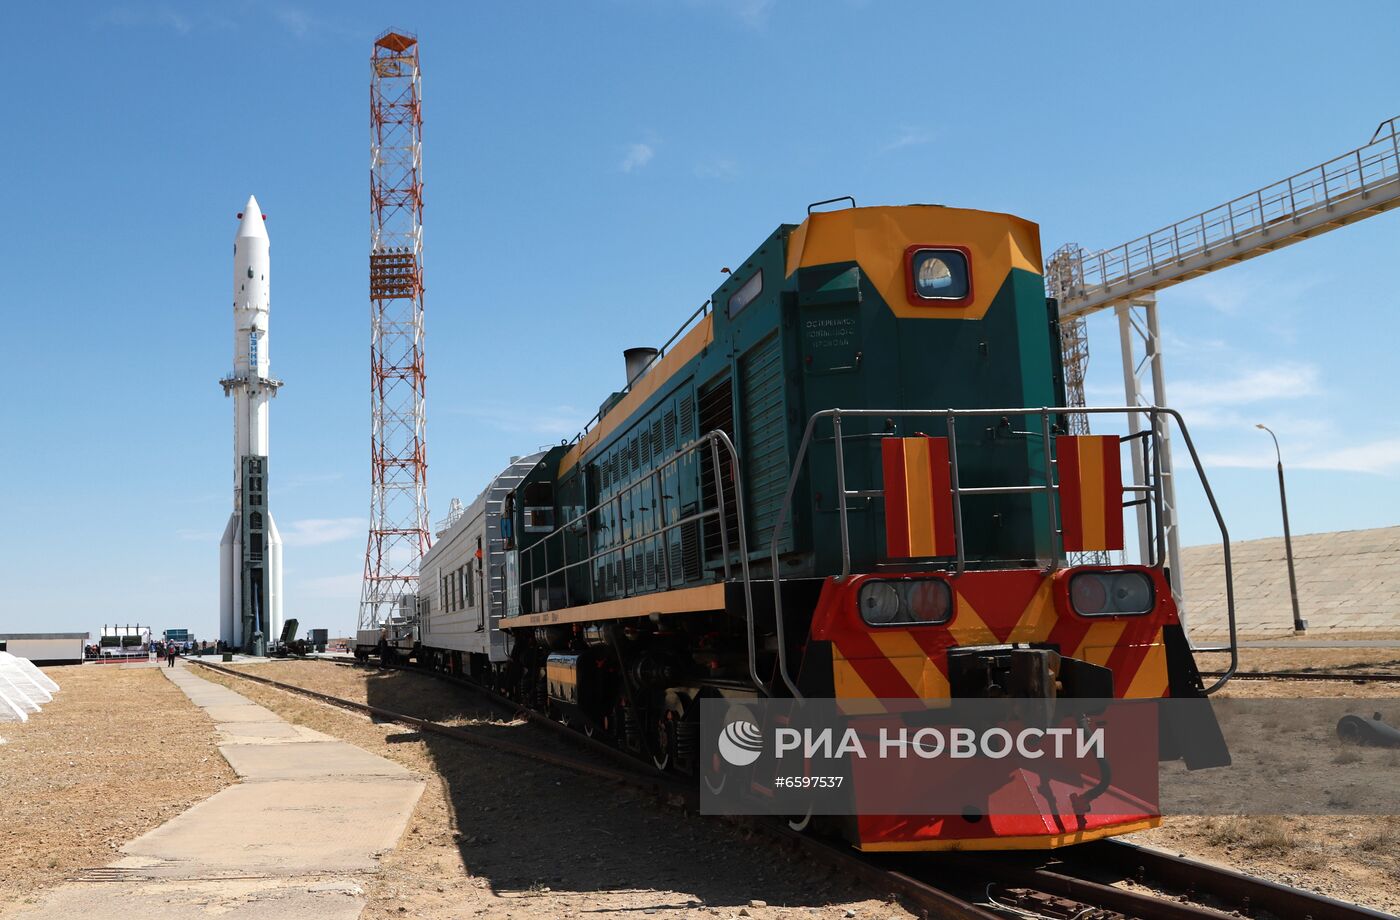 Вывоз на стартовый комплекс космодрома Байконур ракеты-носителя "Протон-М"